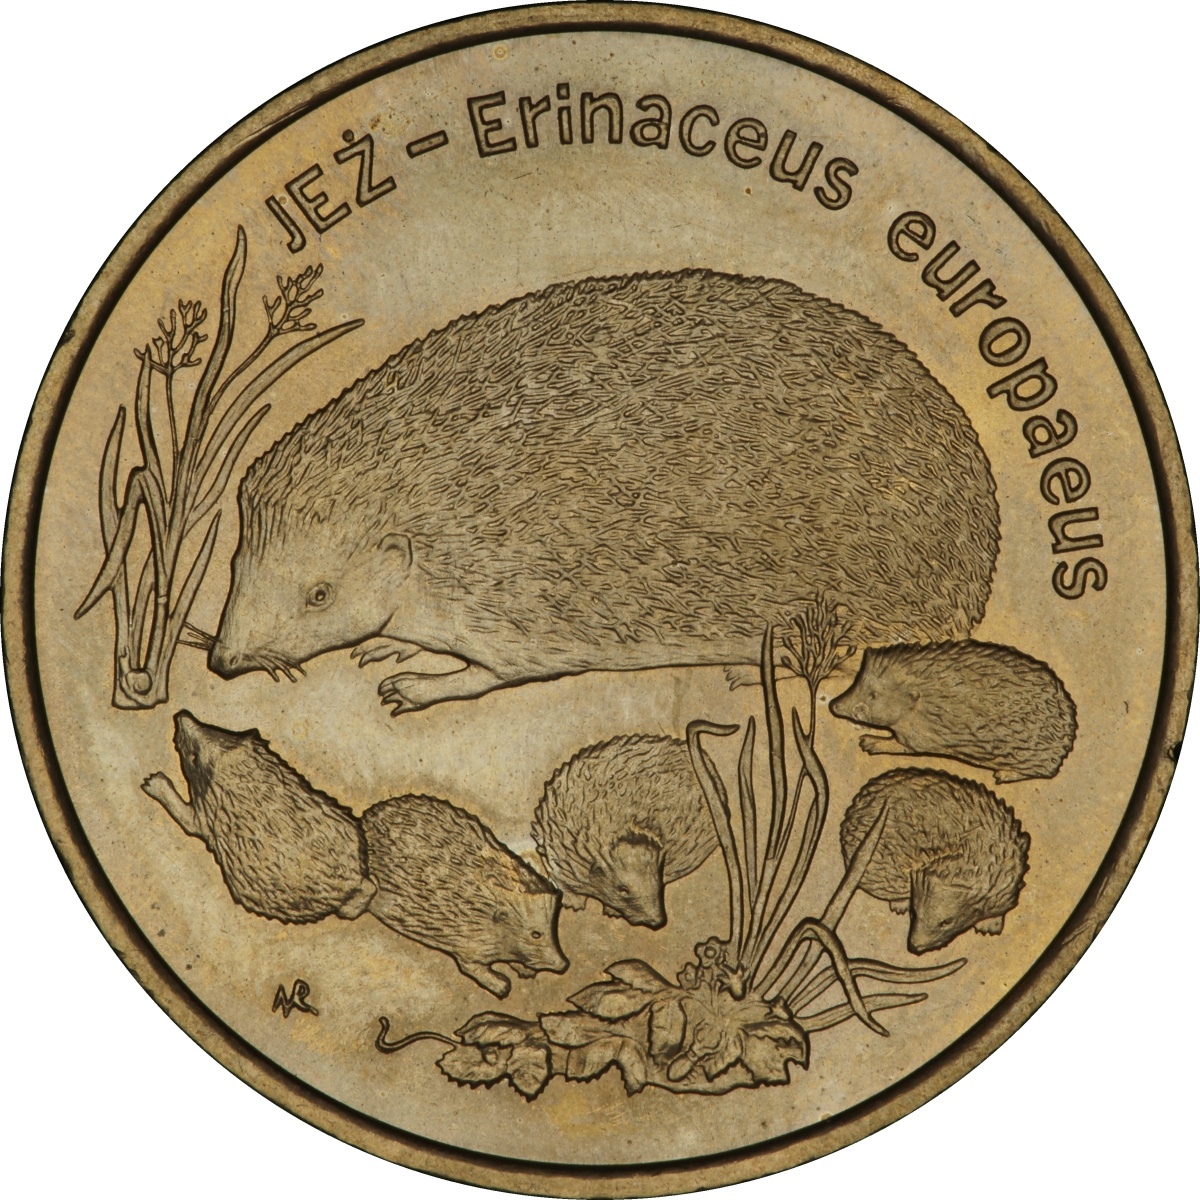 2zl-jez-lac-erinaceus-europaeus-rewers-monety